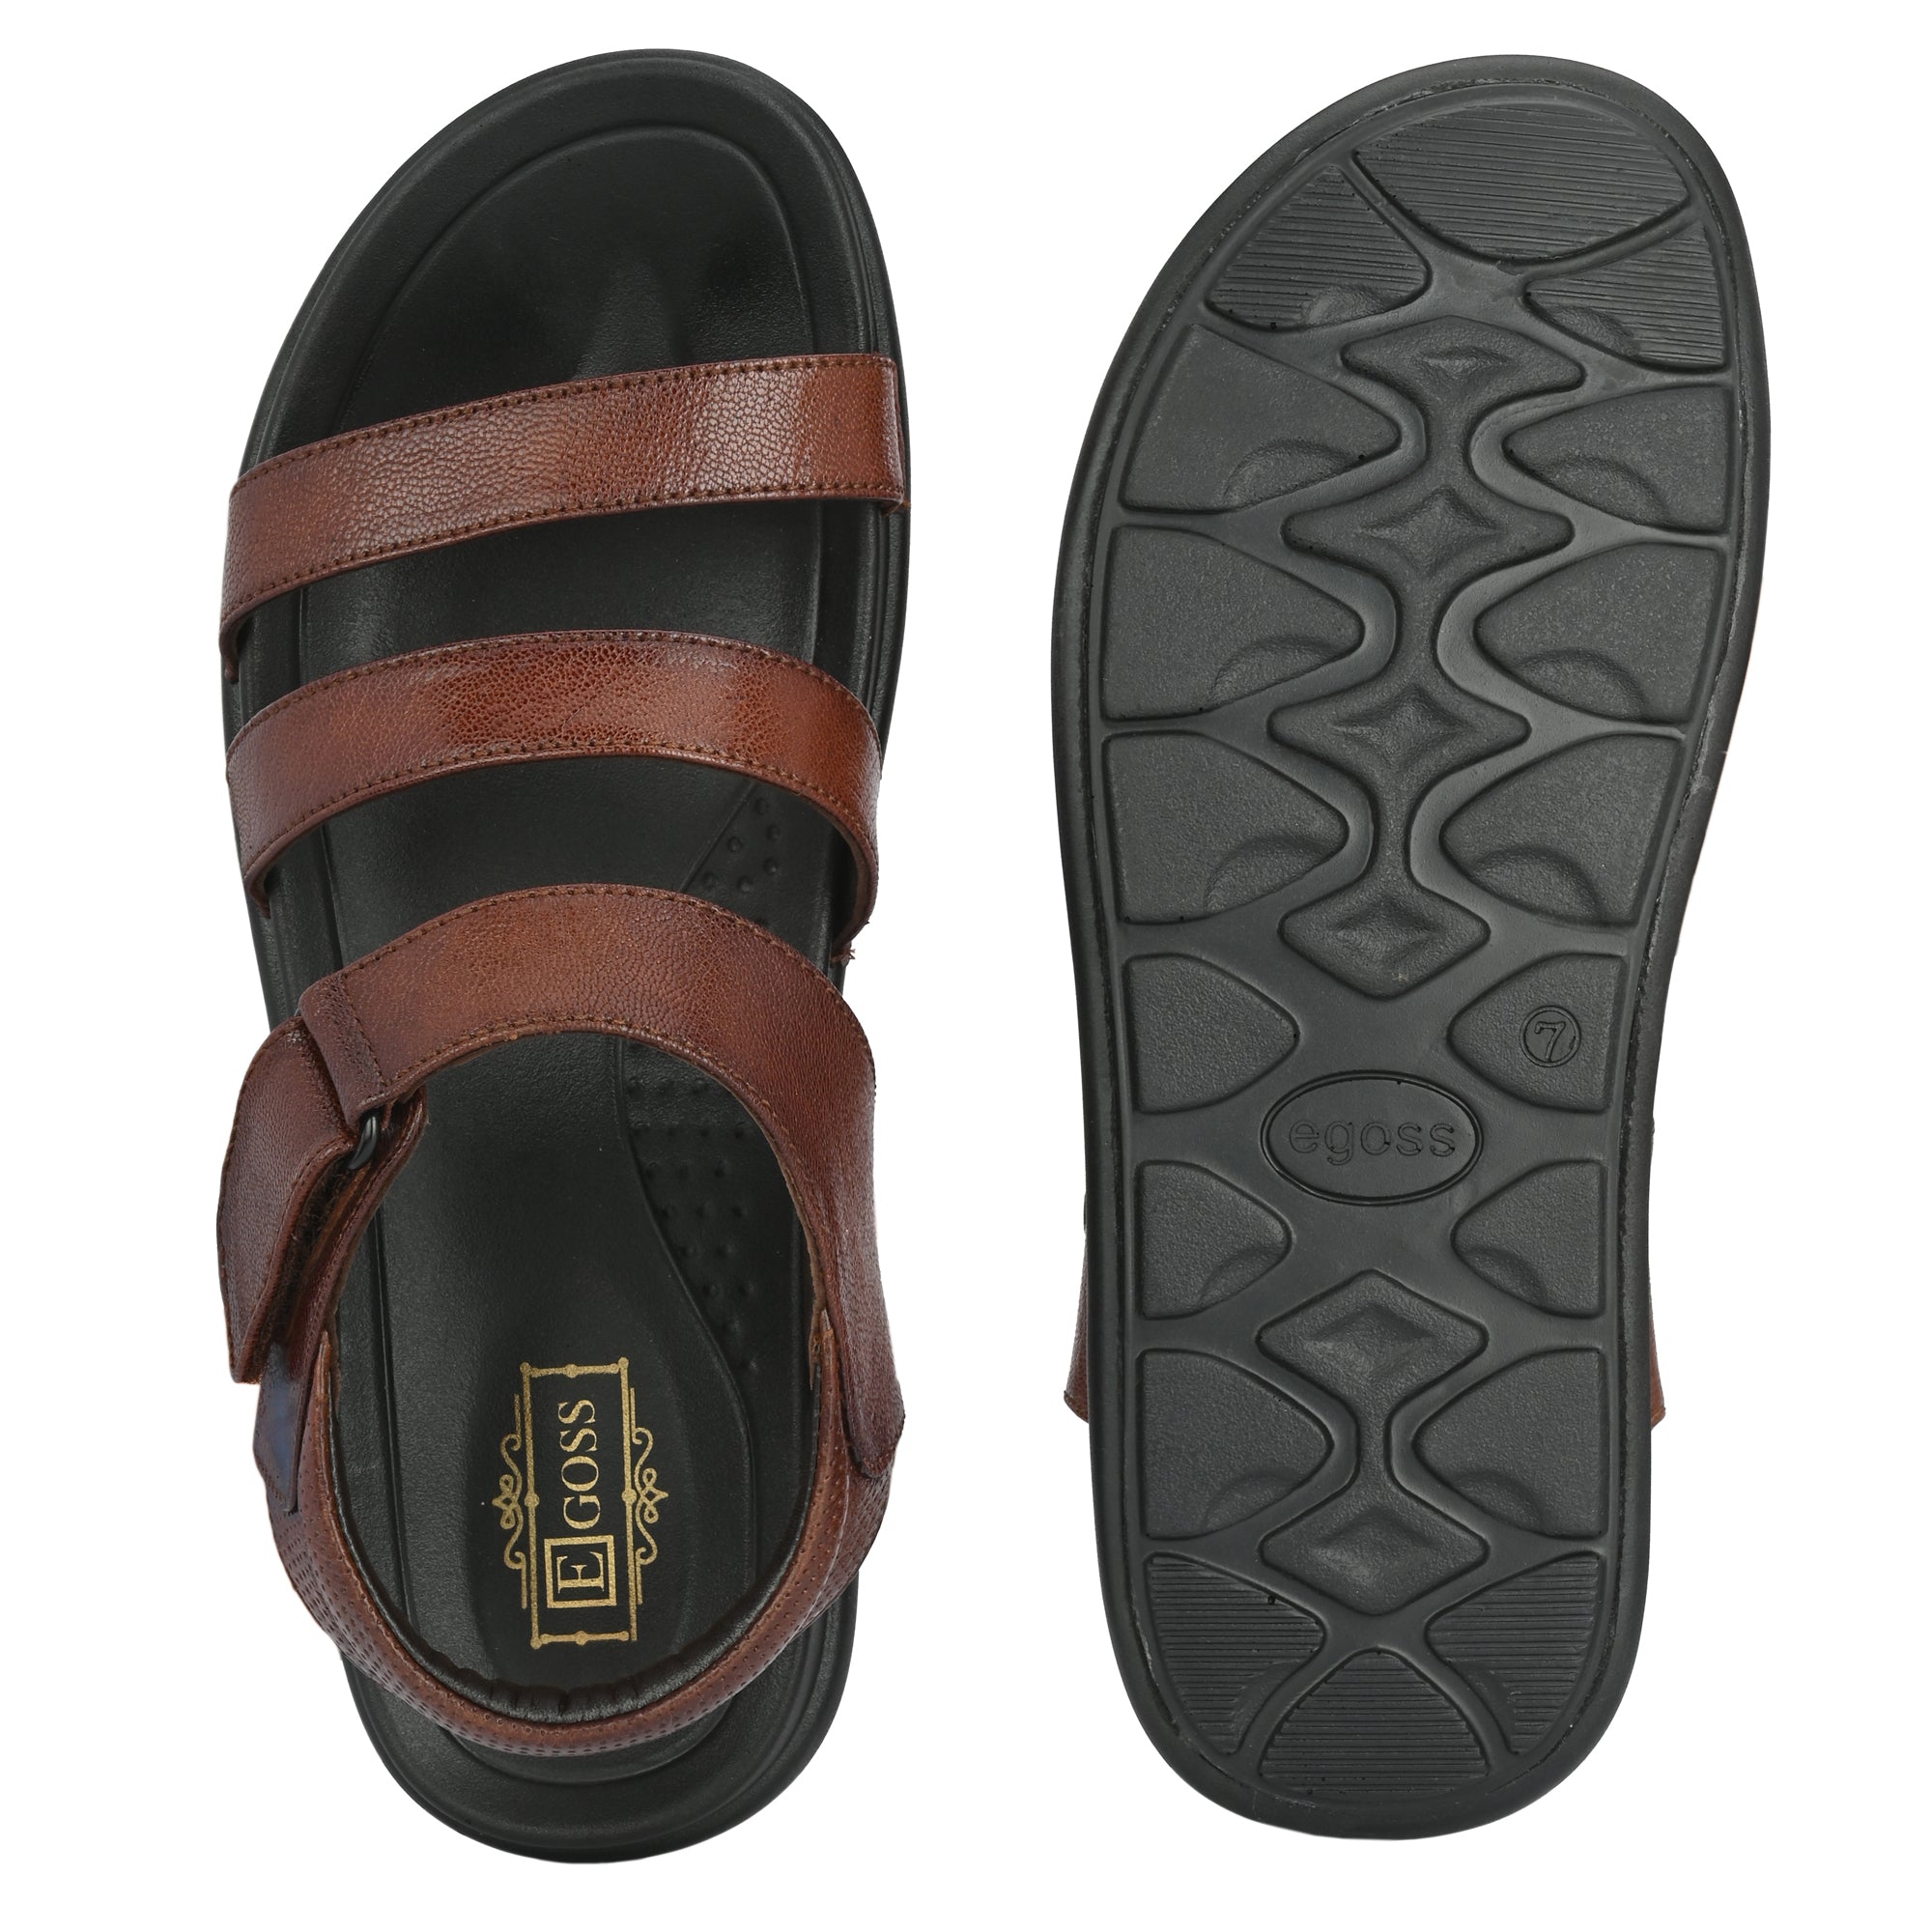 Egoss Sandals For Men